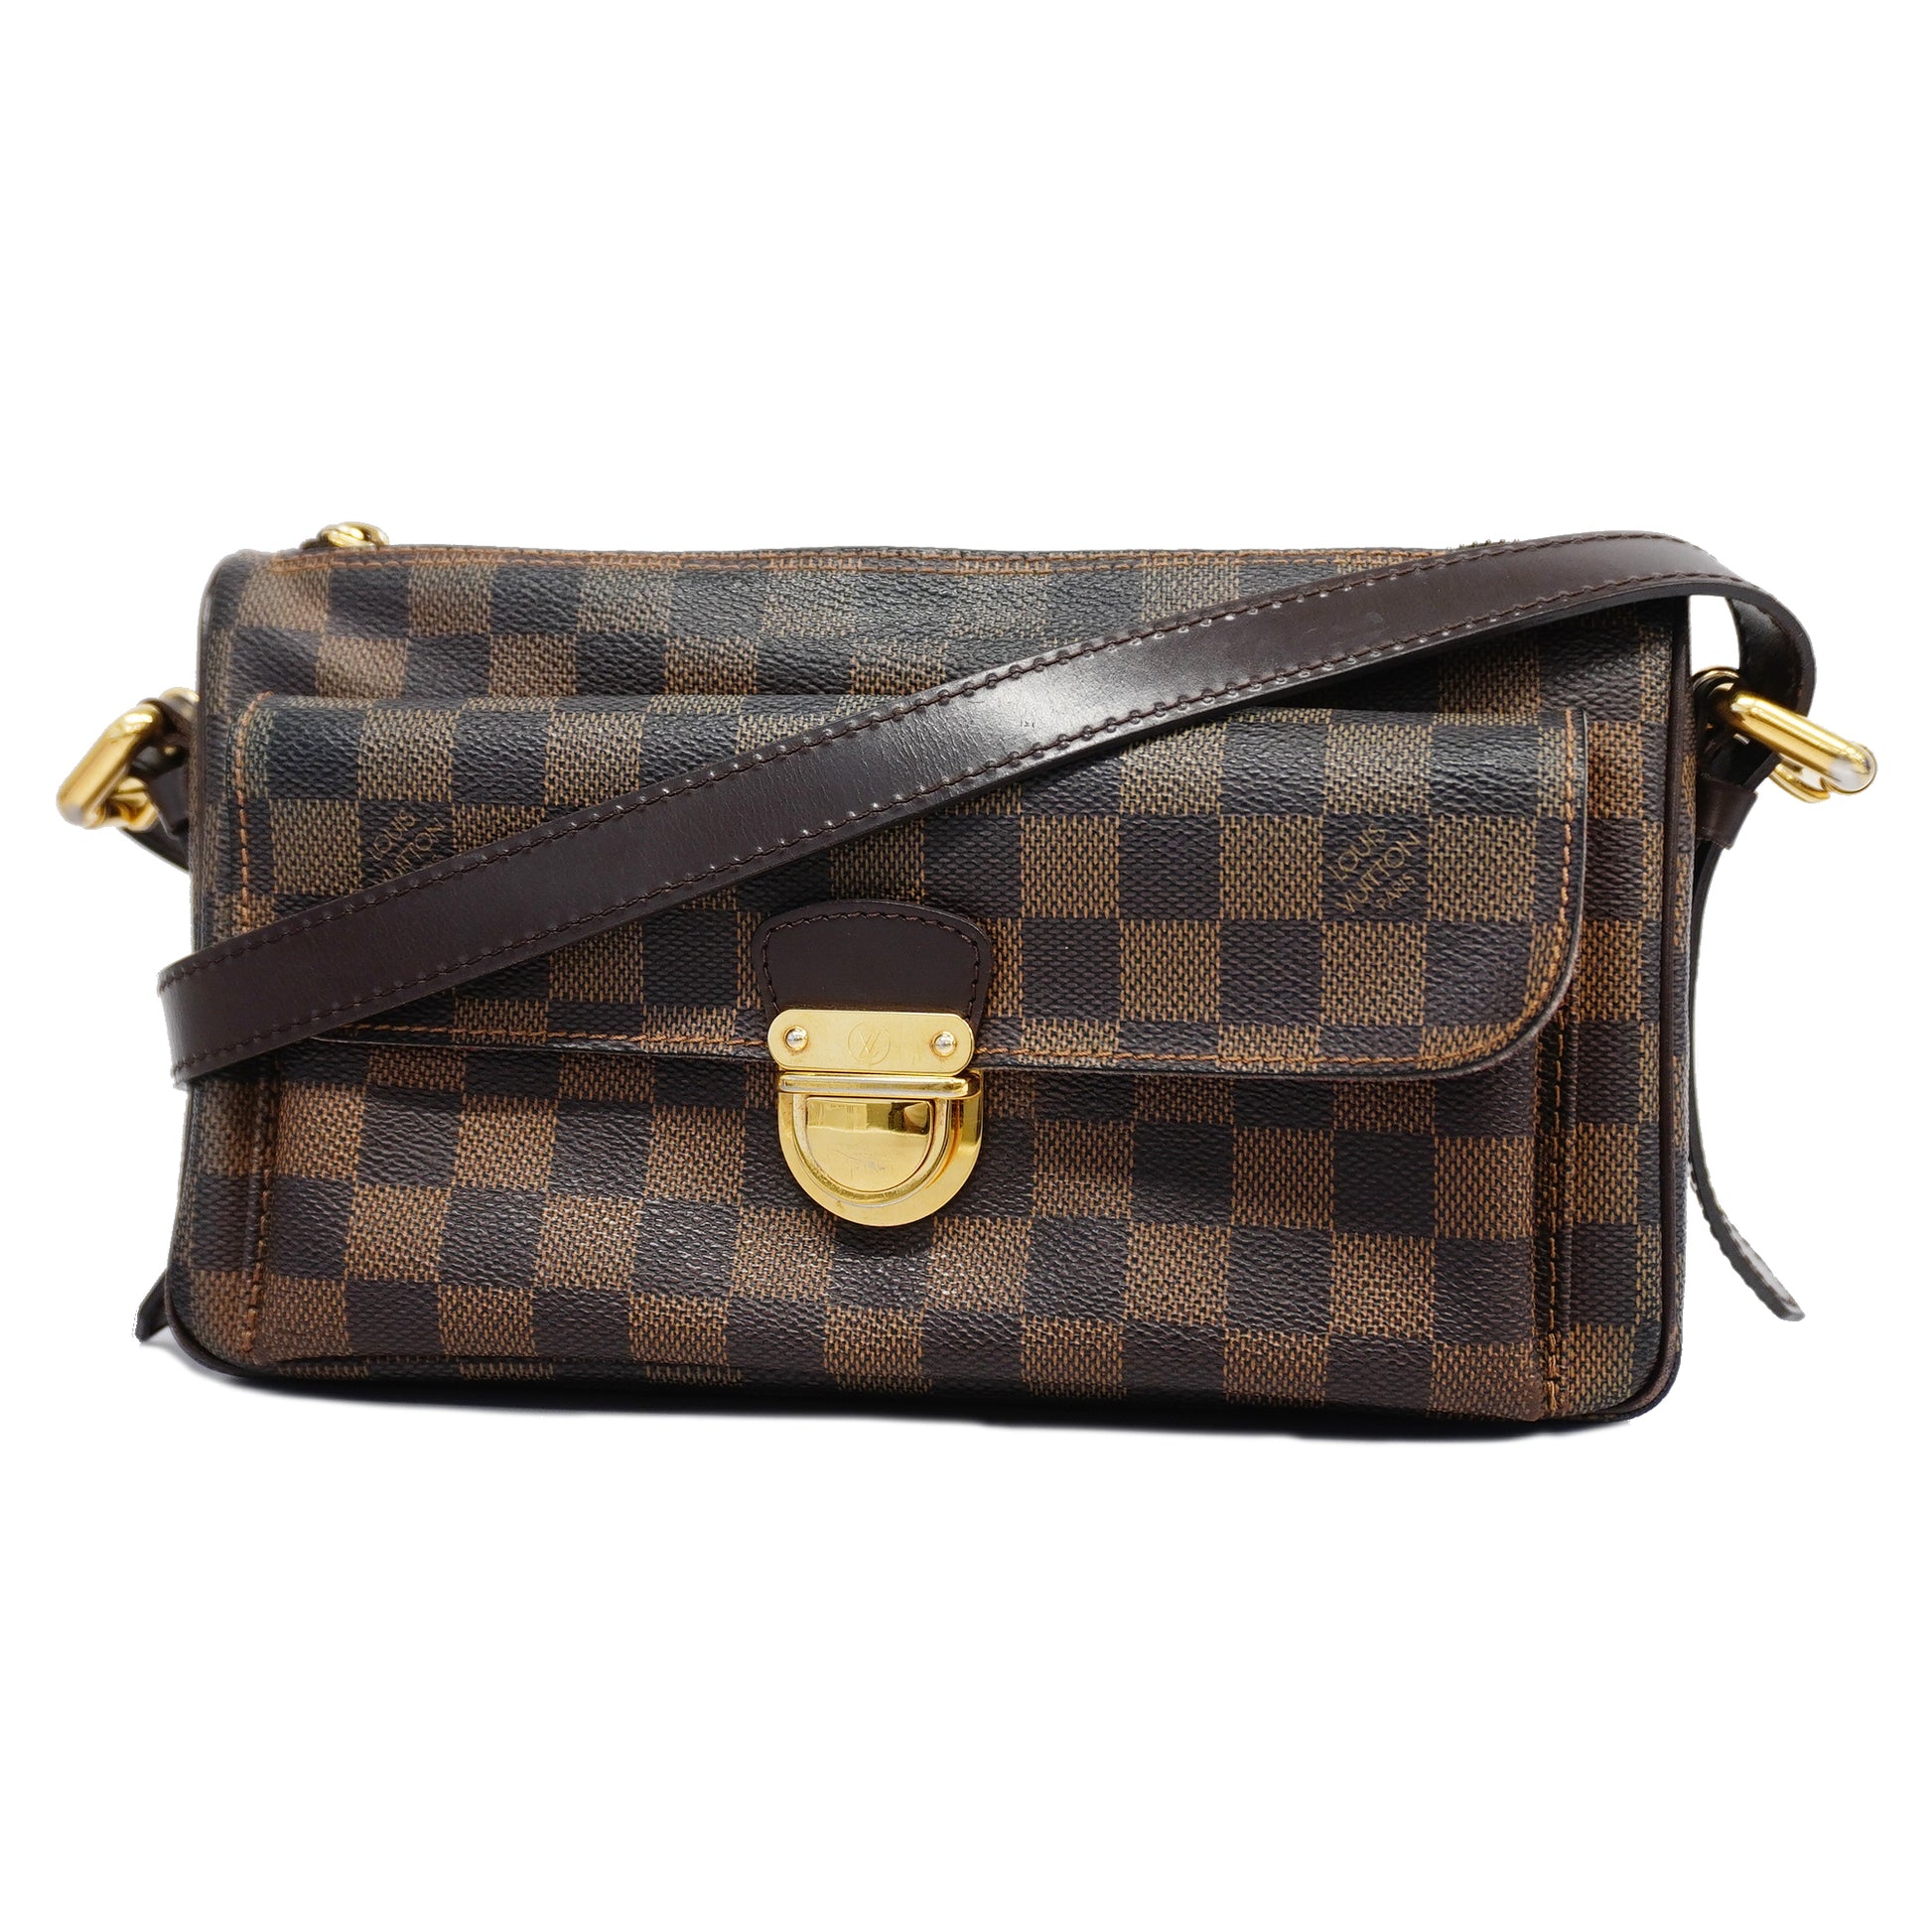 Authentic Louis Vuitton Ravello GM N60006 Brown Damier Shoulder Bag.